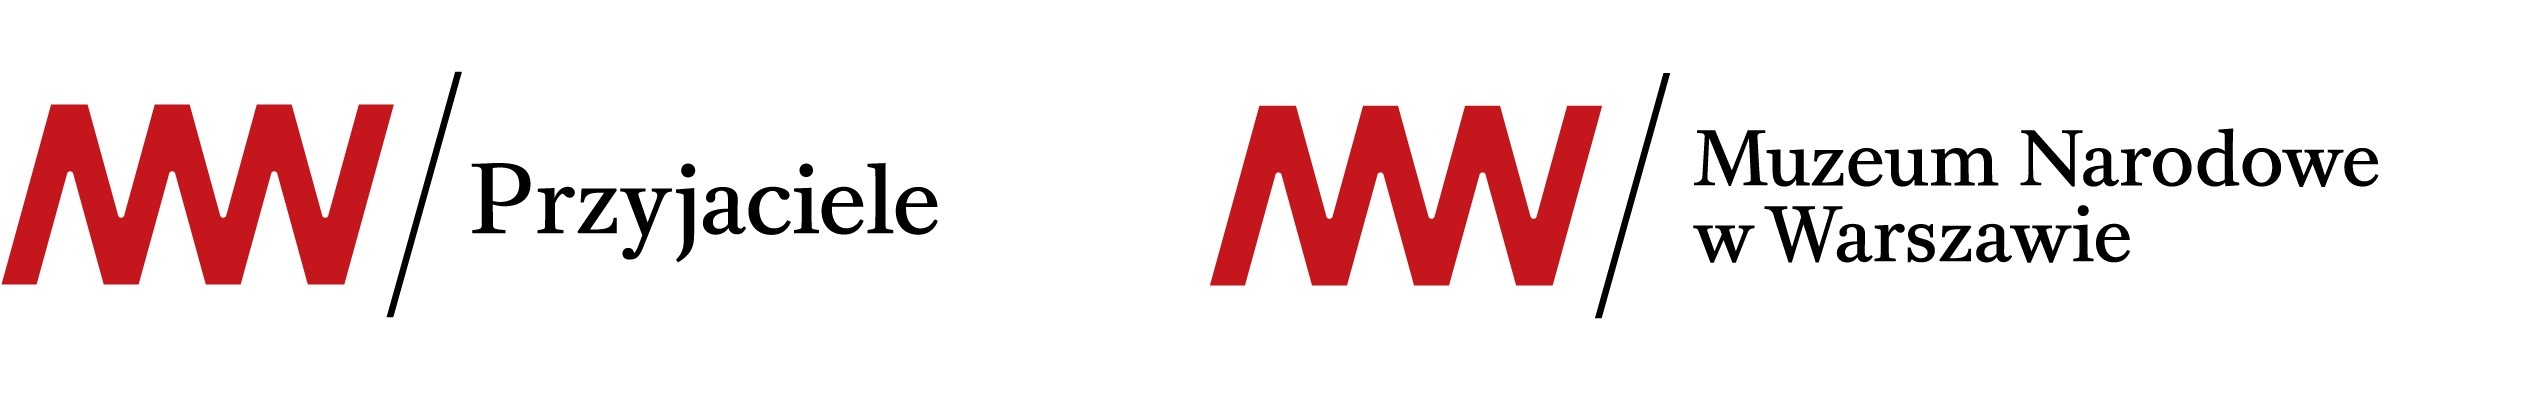 logo mnw-012